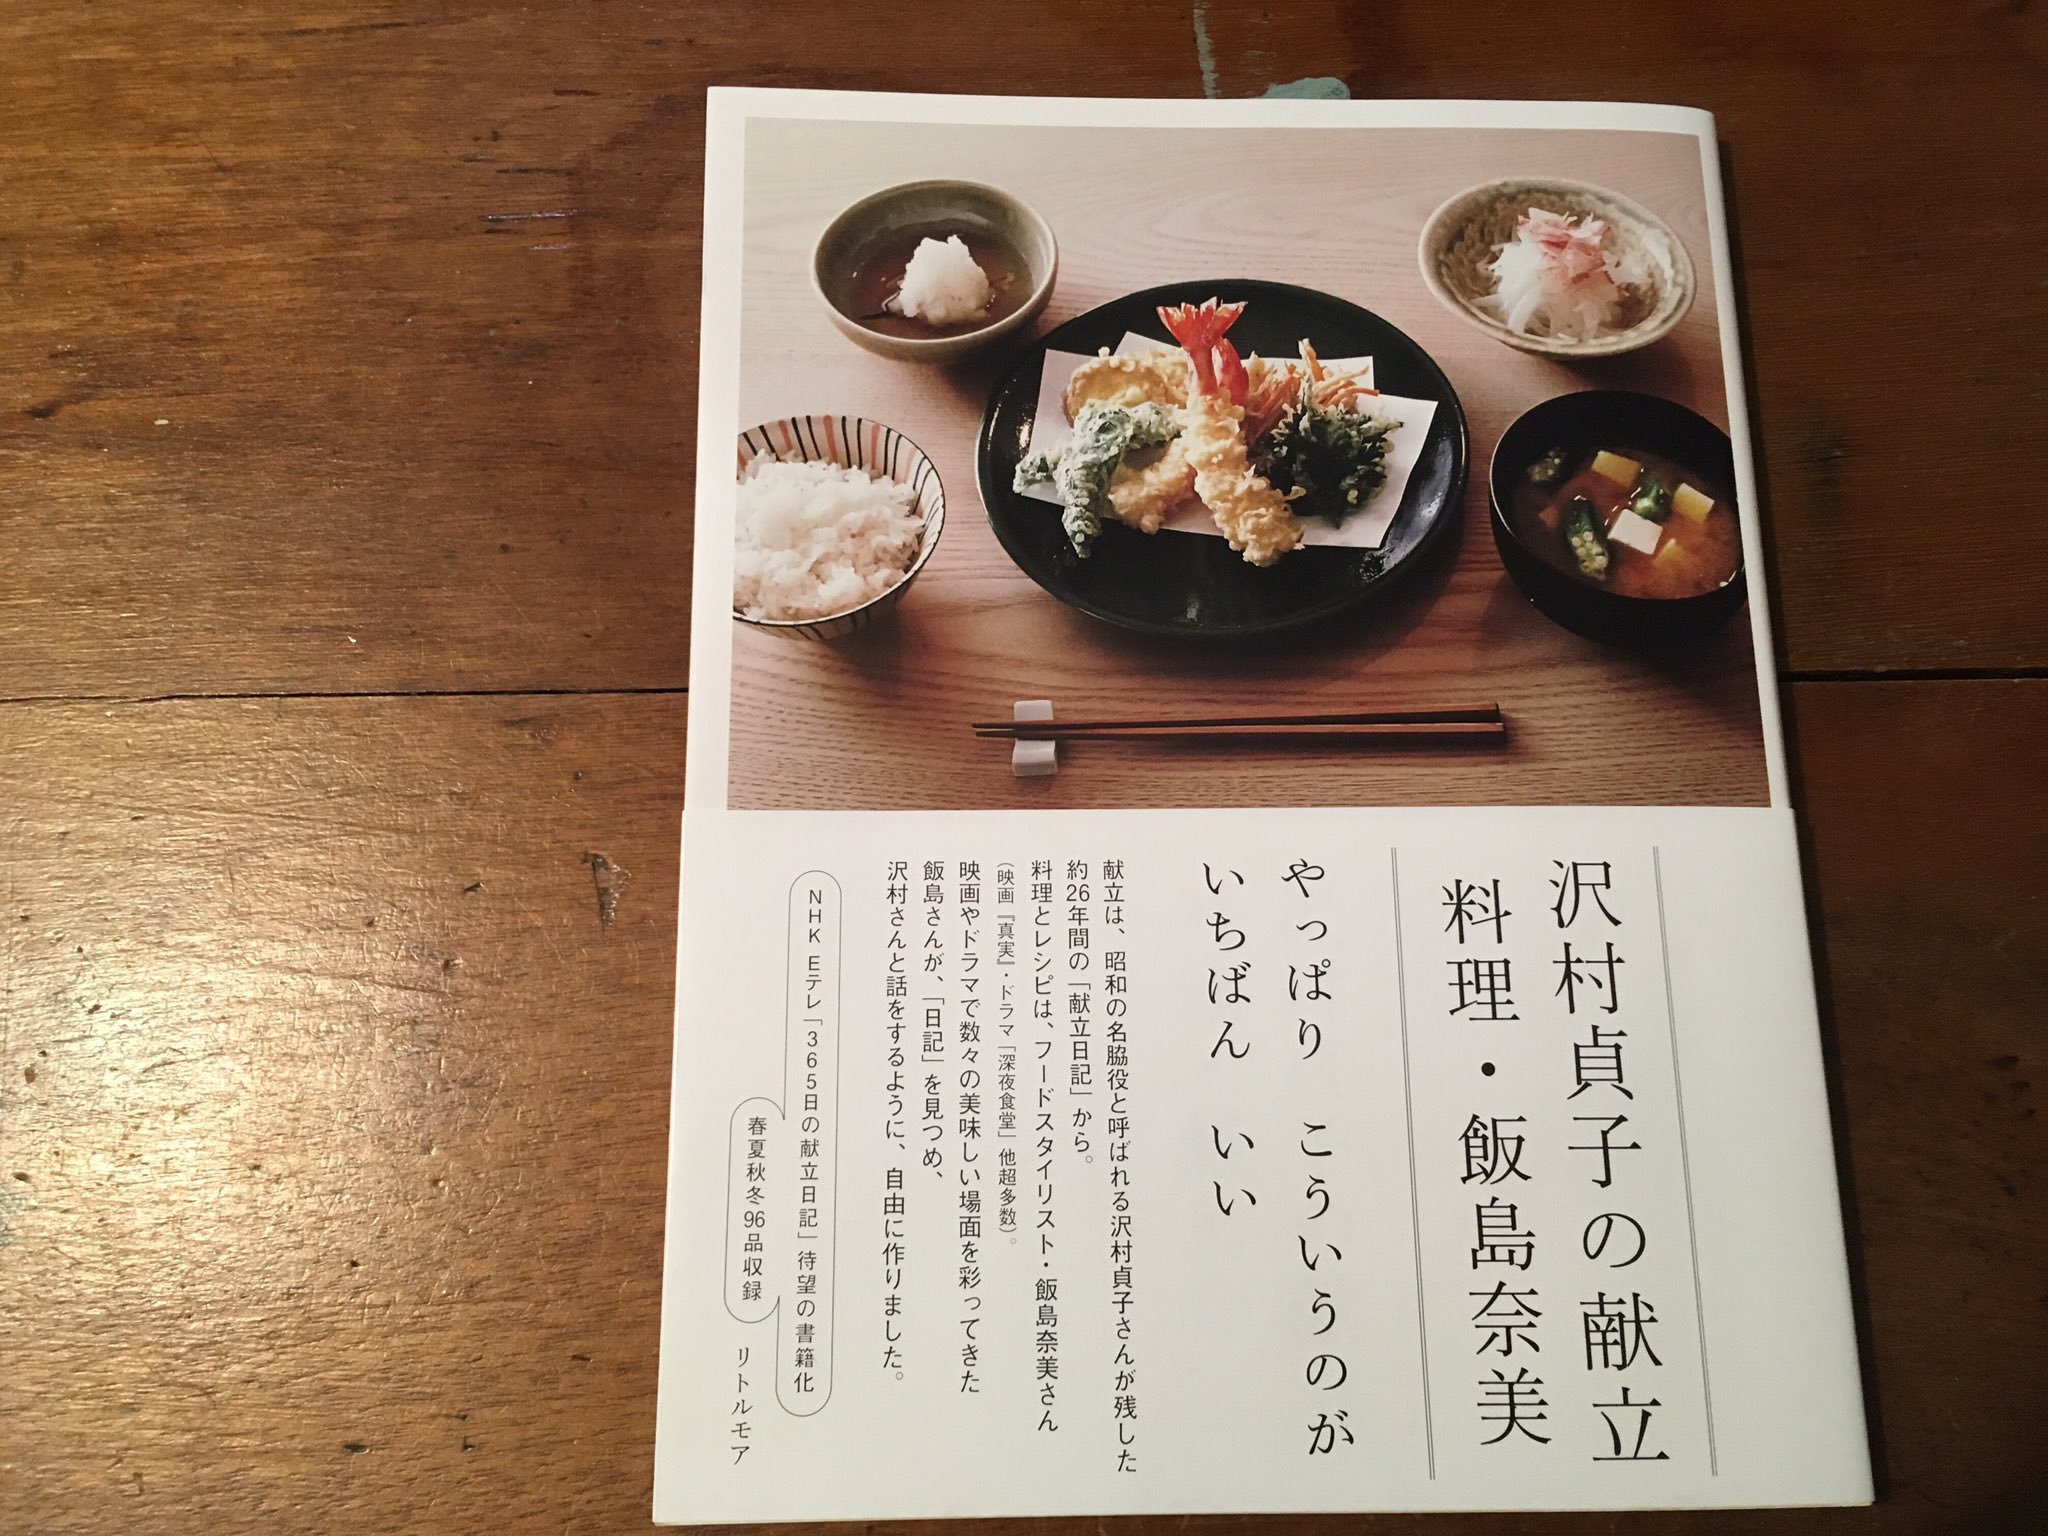 貞子 レシピ 沢村 憧れ続けて30年。やっと食べられた「ウニの砂」